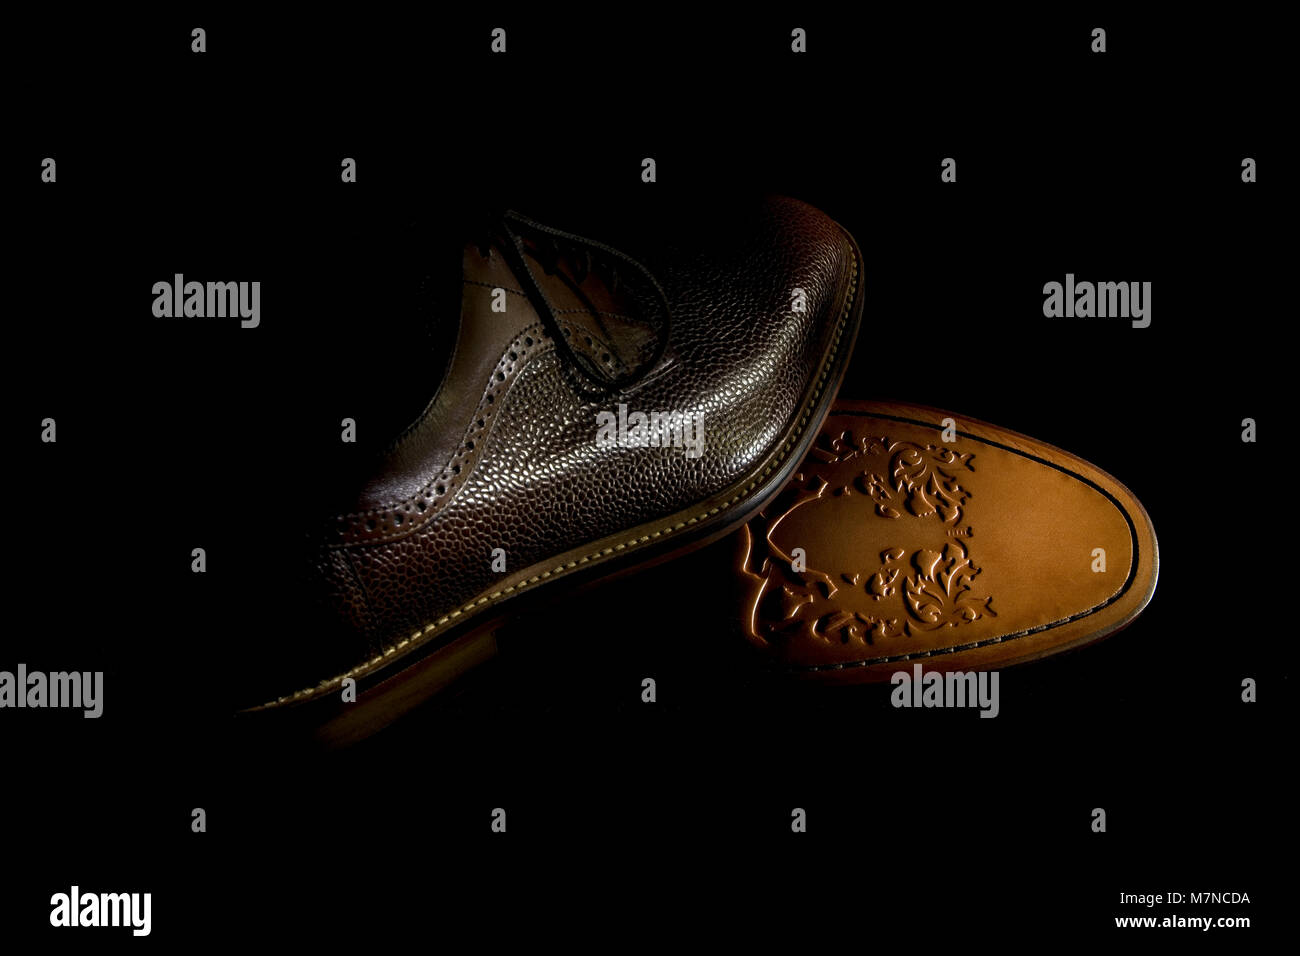 Ein paar Brown's Herrenschuhe mit geprägtem Leder Sohle mit Low Key  Beleuchtung gegen einen dunklen Hintergrund Stockfotografie - Alamy